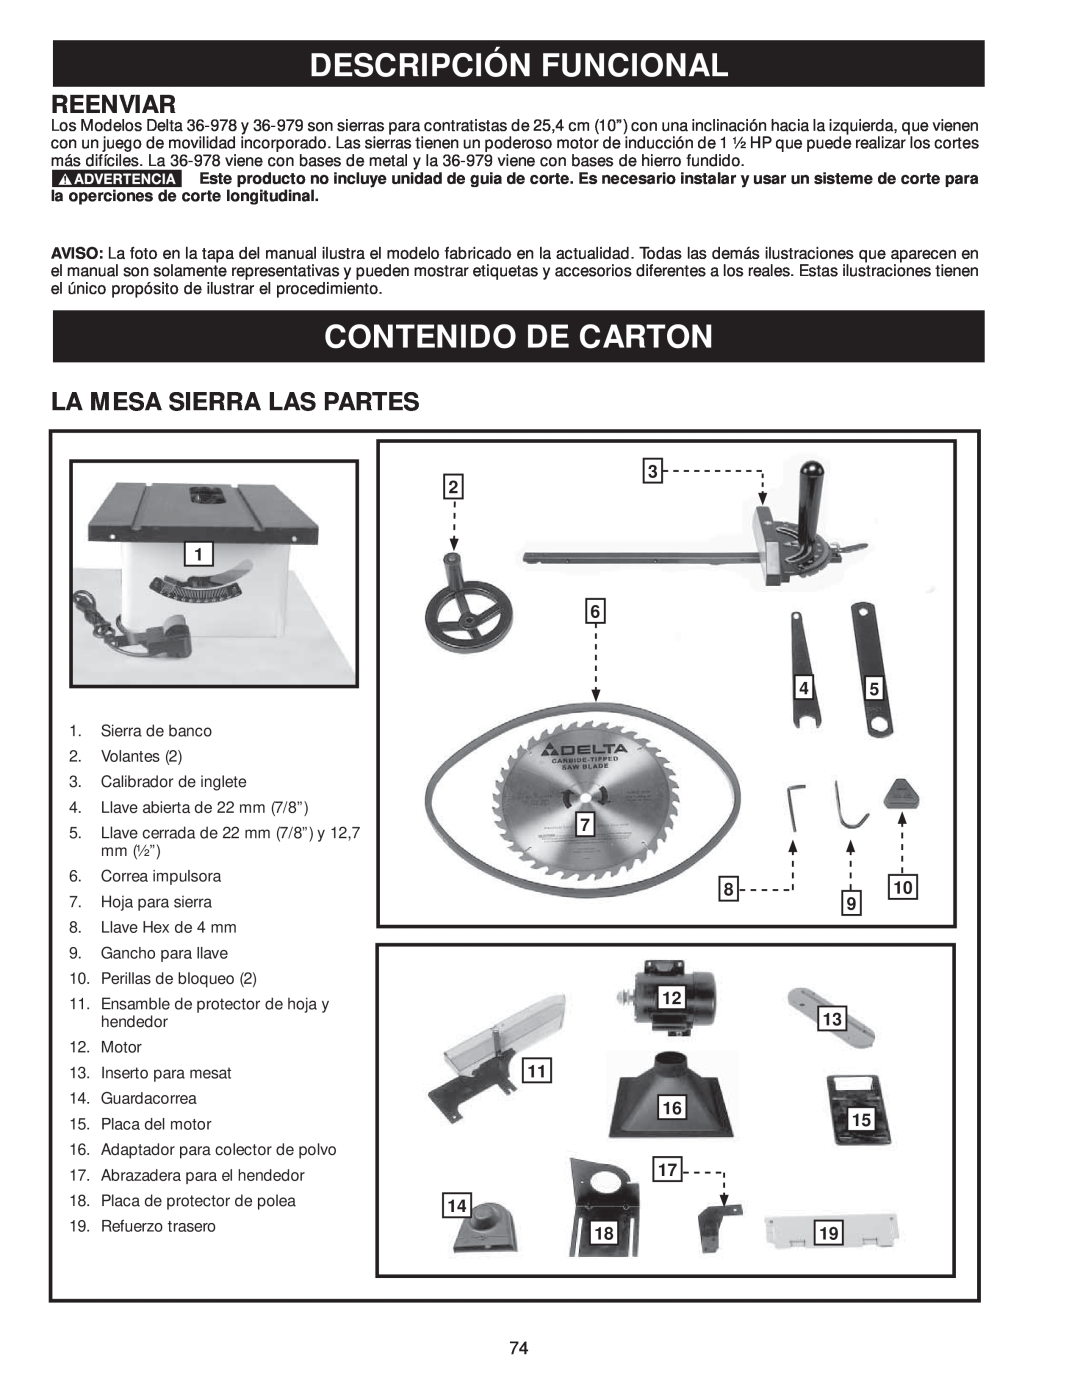 Delta 36-979, 36-978 instruction manual Descripción Funcional, Contenido De Carton, Reenviar, La Mesa Sierra Las Partes 